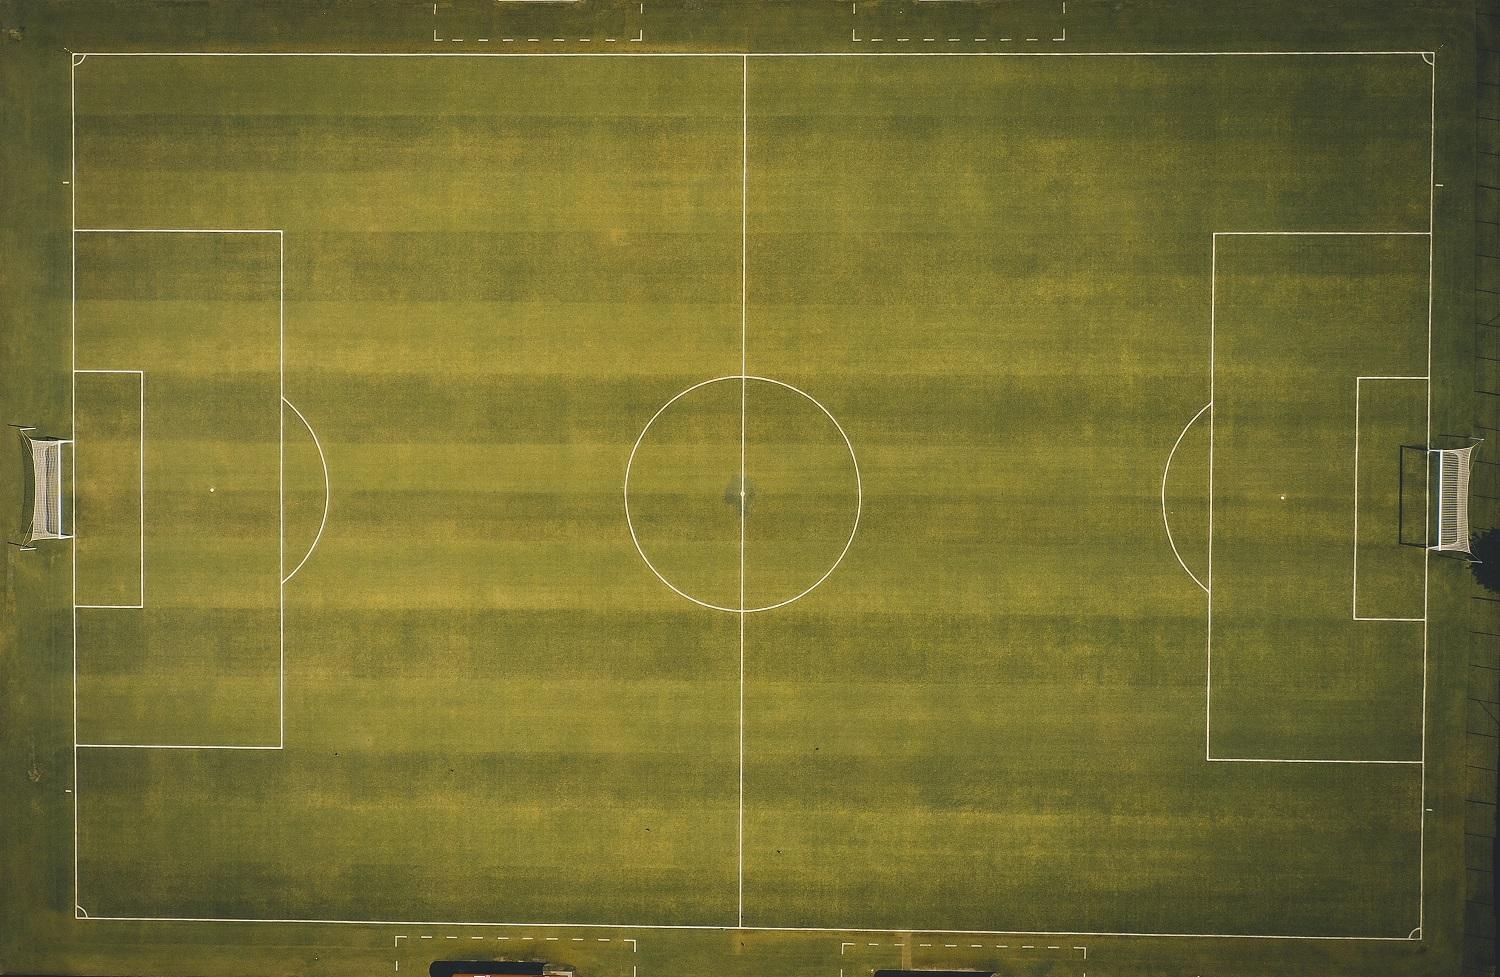 u10 soccer field dimensions